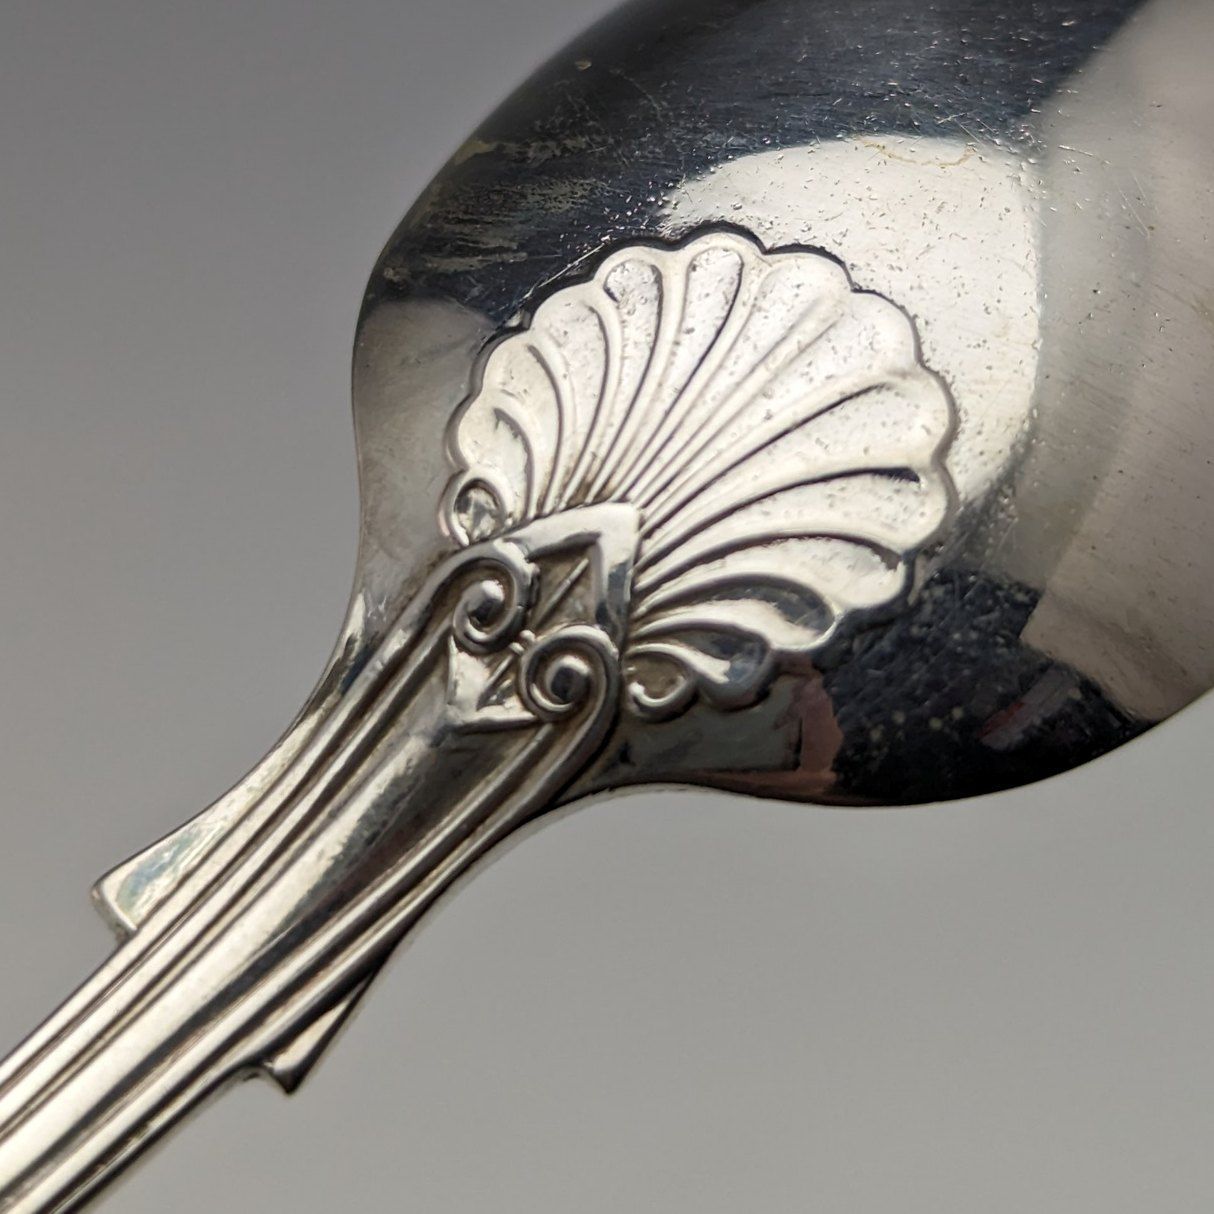 目立った傷や汚れのない美品機能1914年頃 英国アンティーク 純銀製ティースプーン ペア Mappin & Webb